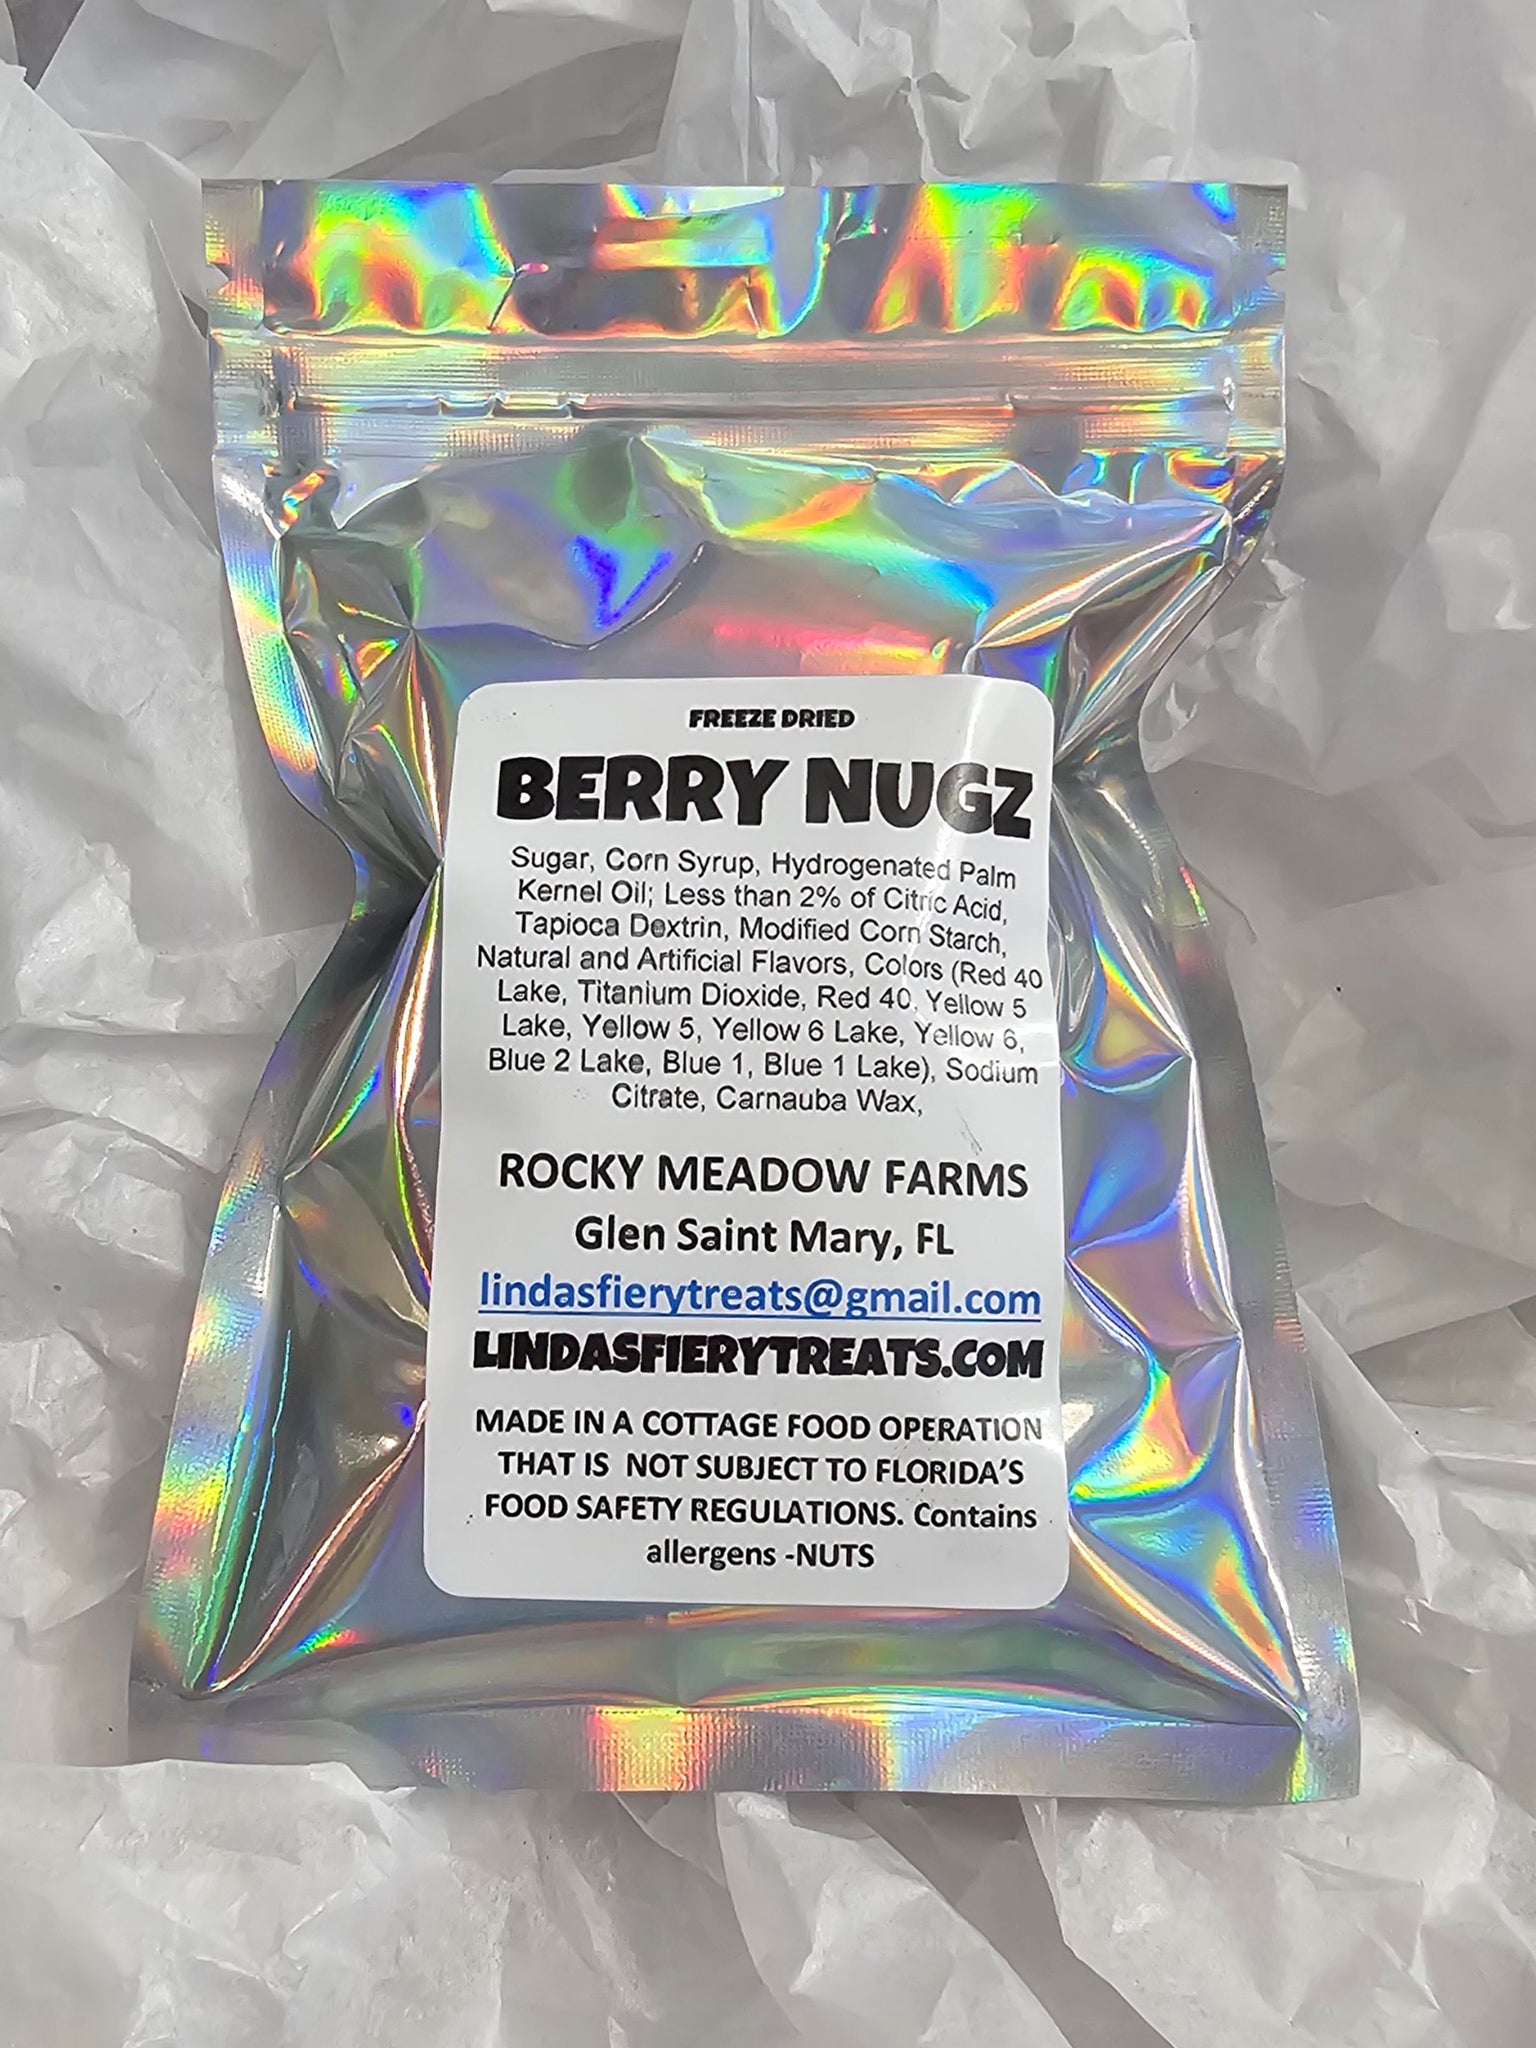 Freeze dried - Berry Nugz